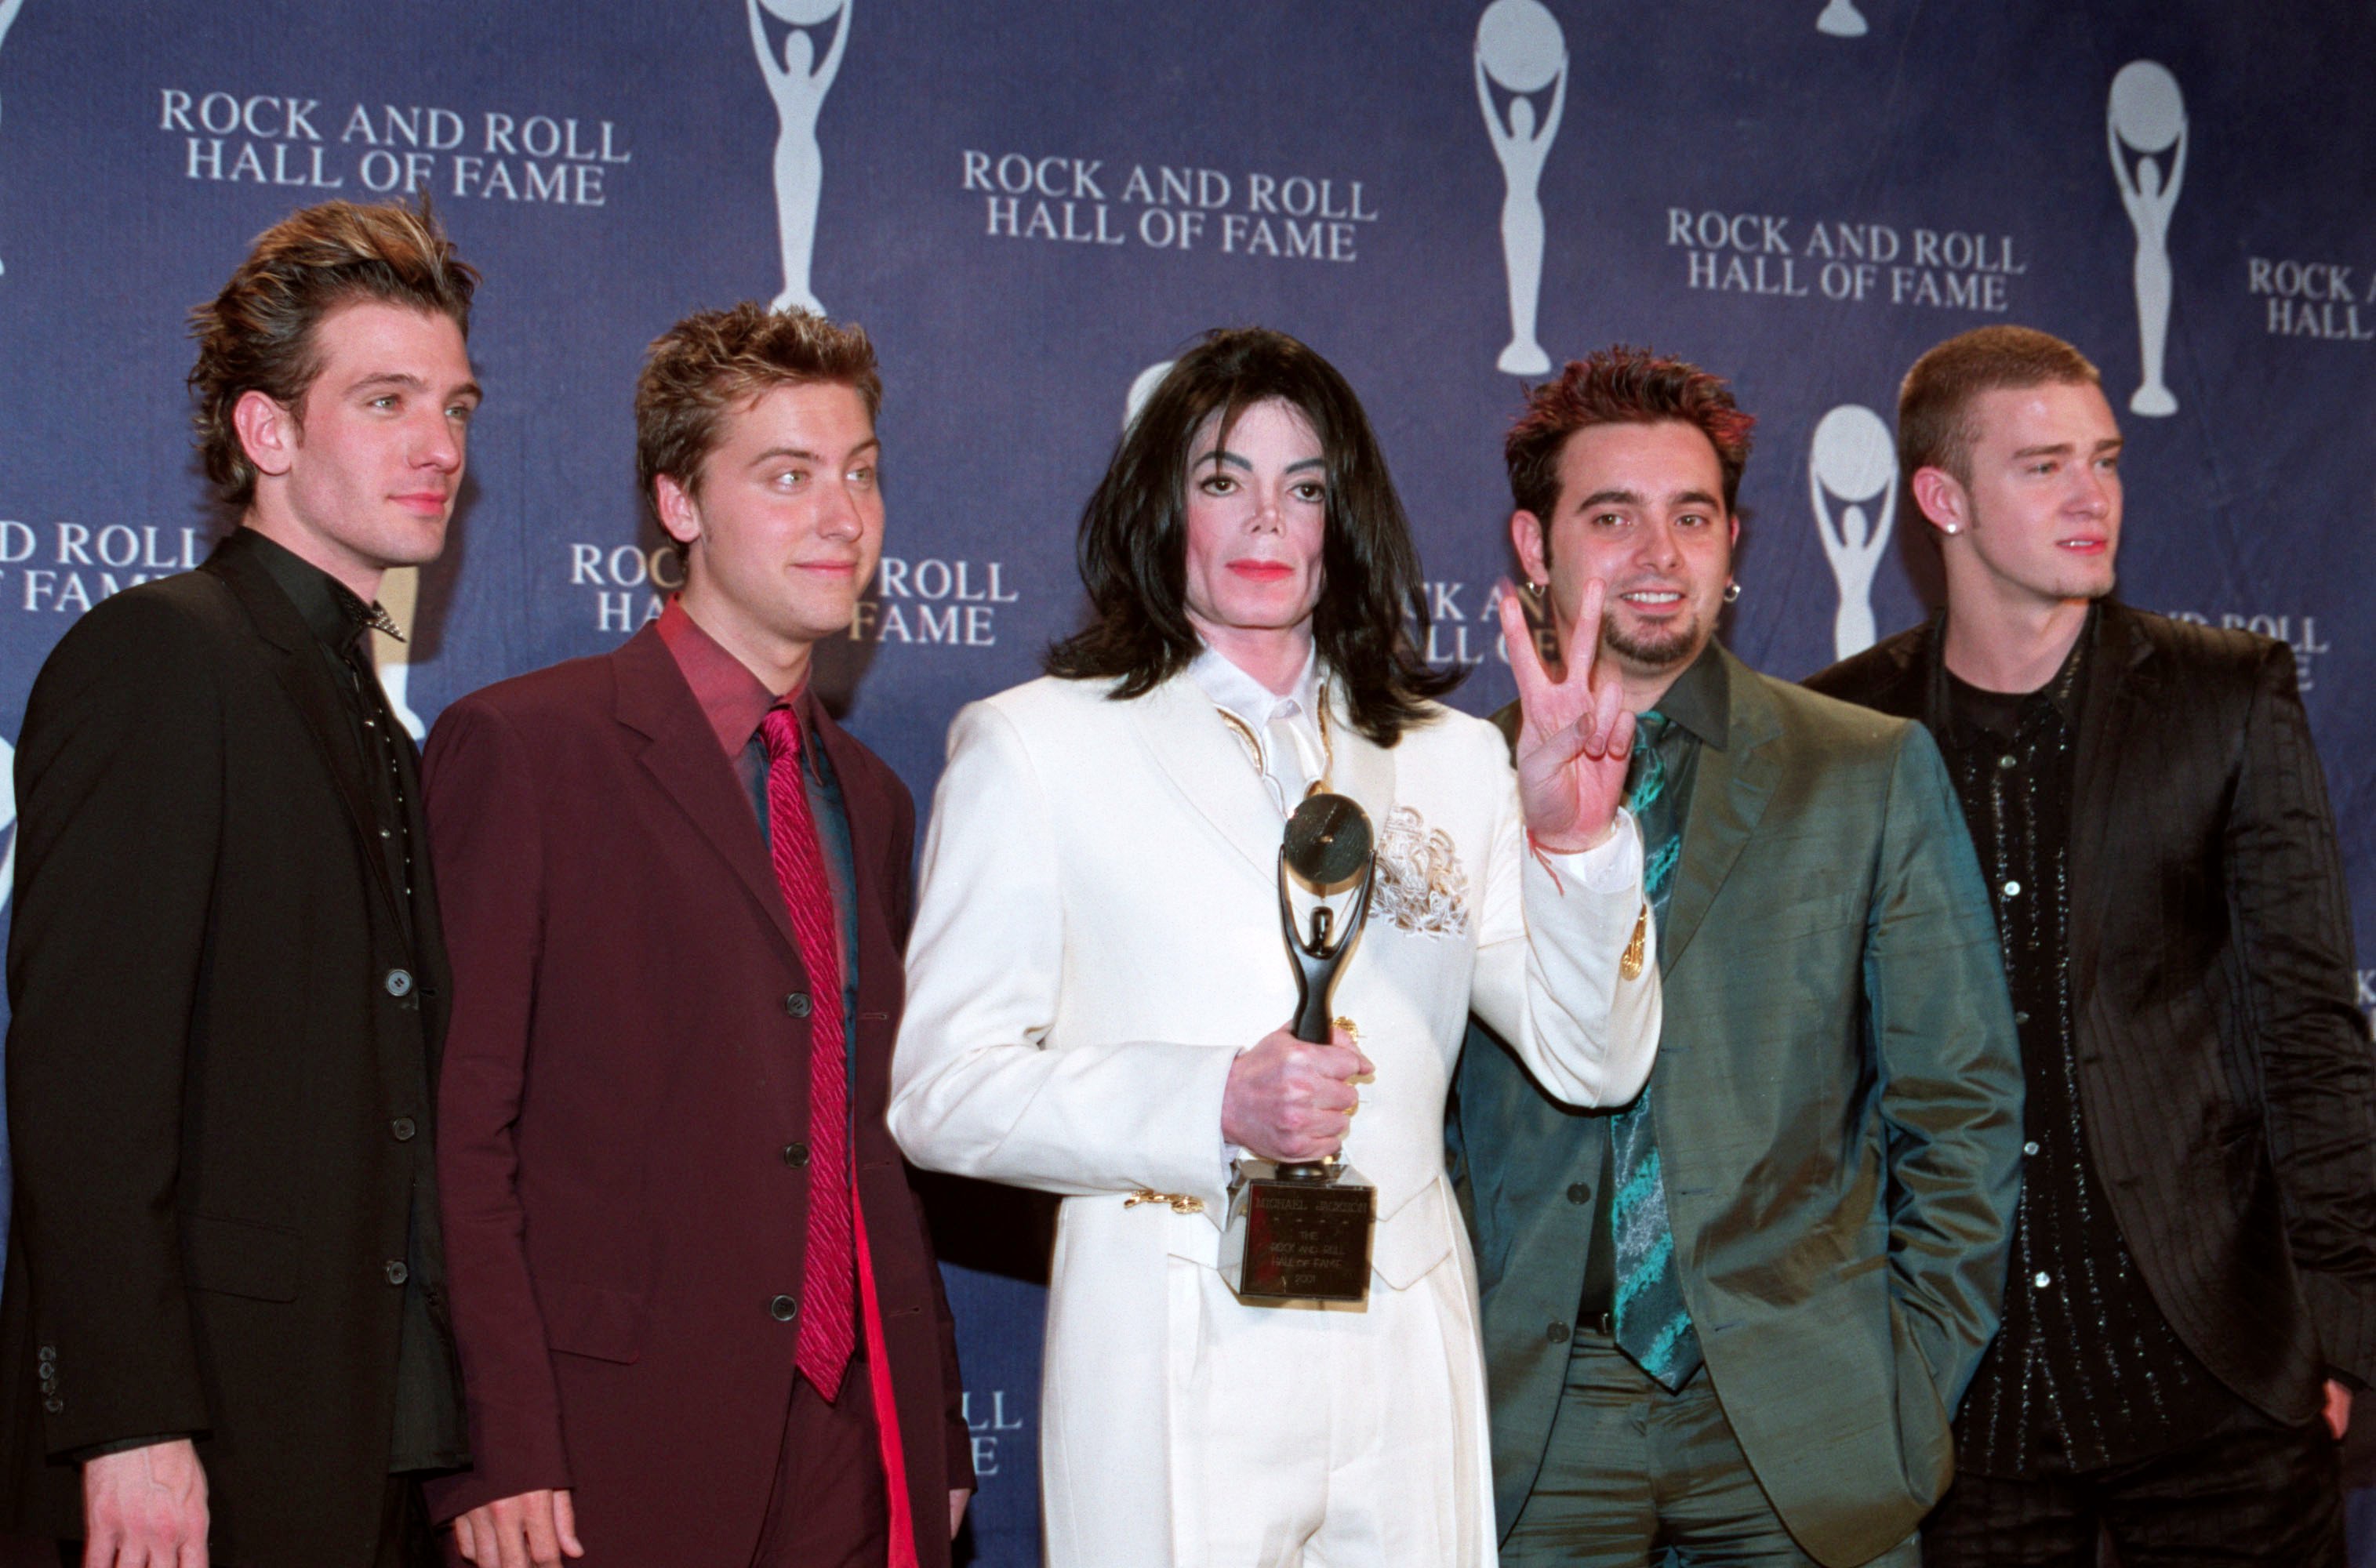 JC Chasez, Lance Bass, Michael Jackson, Chris Kirkpatrick, and Justin Timberlake wearing suits